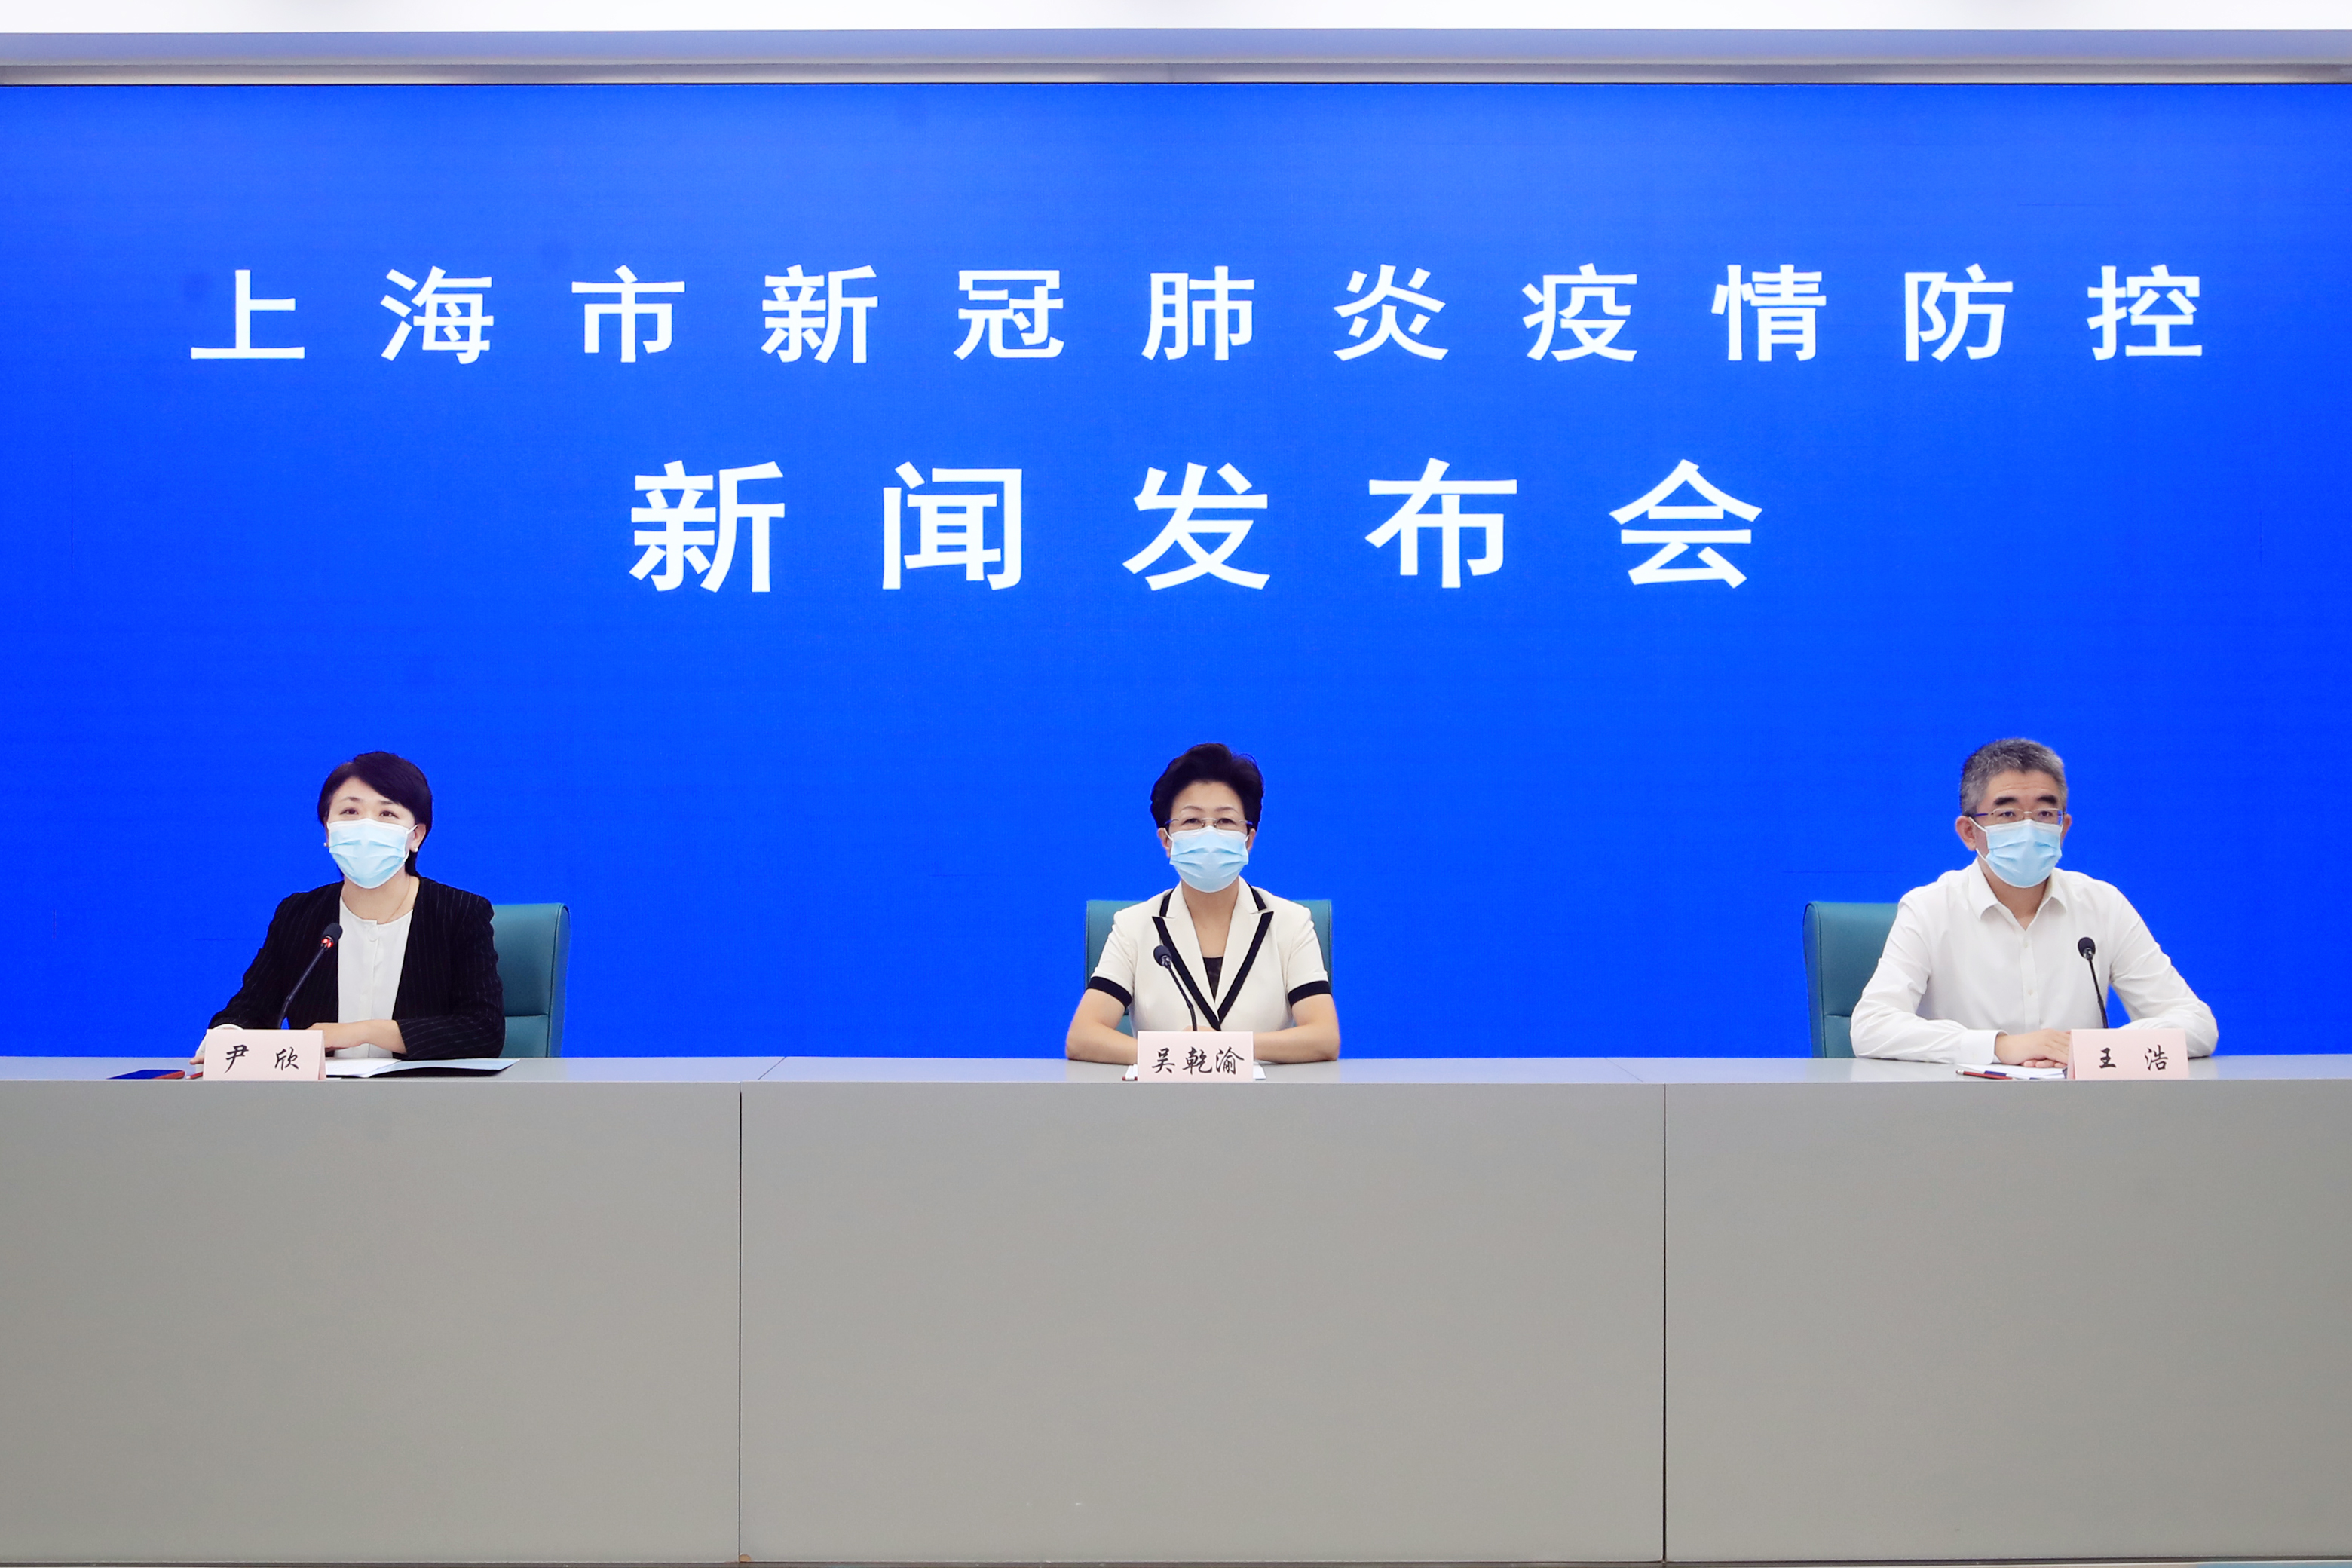 8月25日上海通报新冠肺炎防控情况